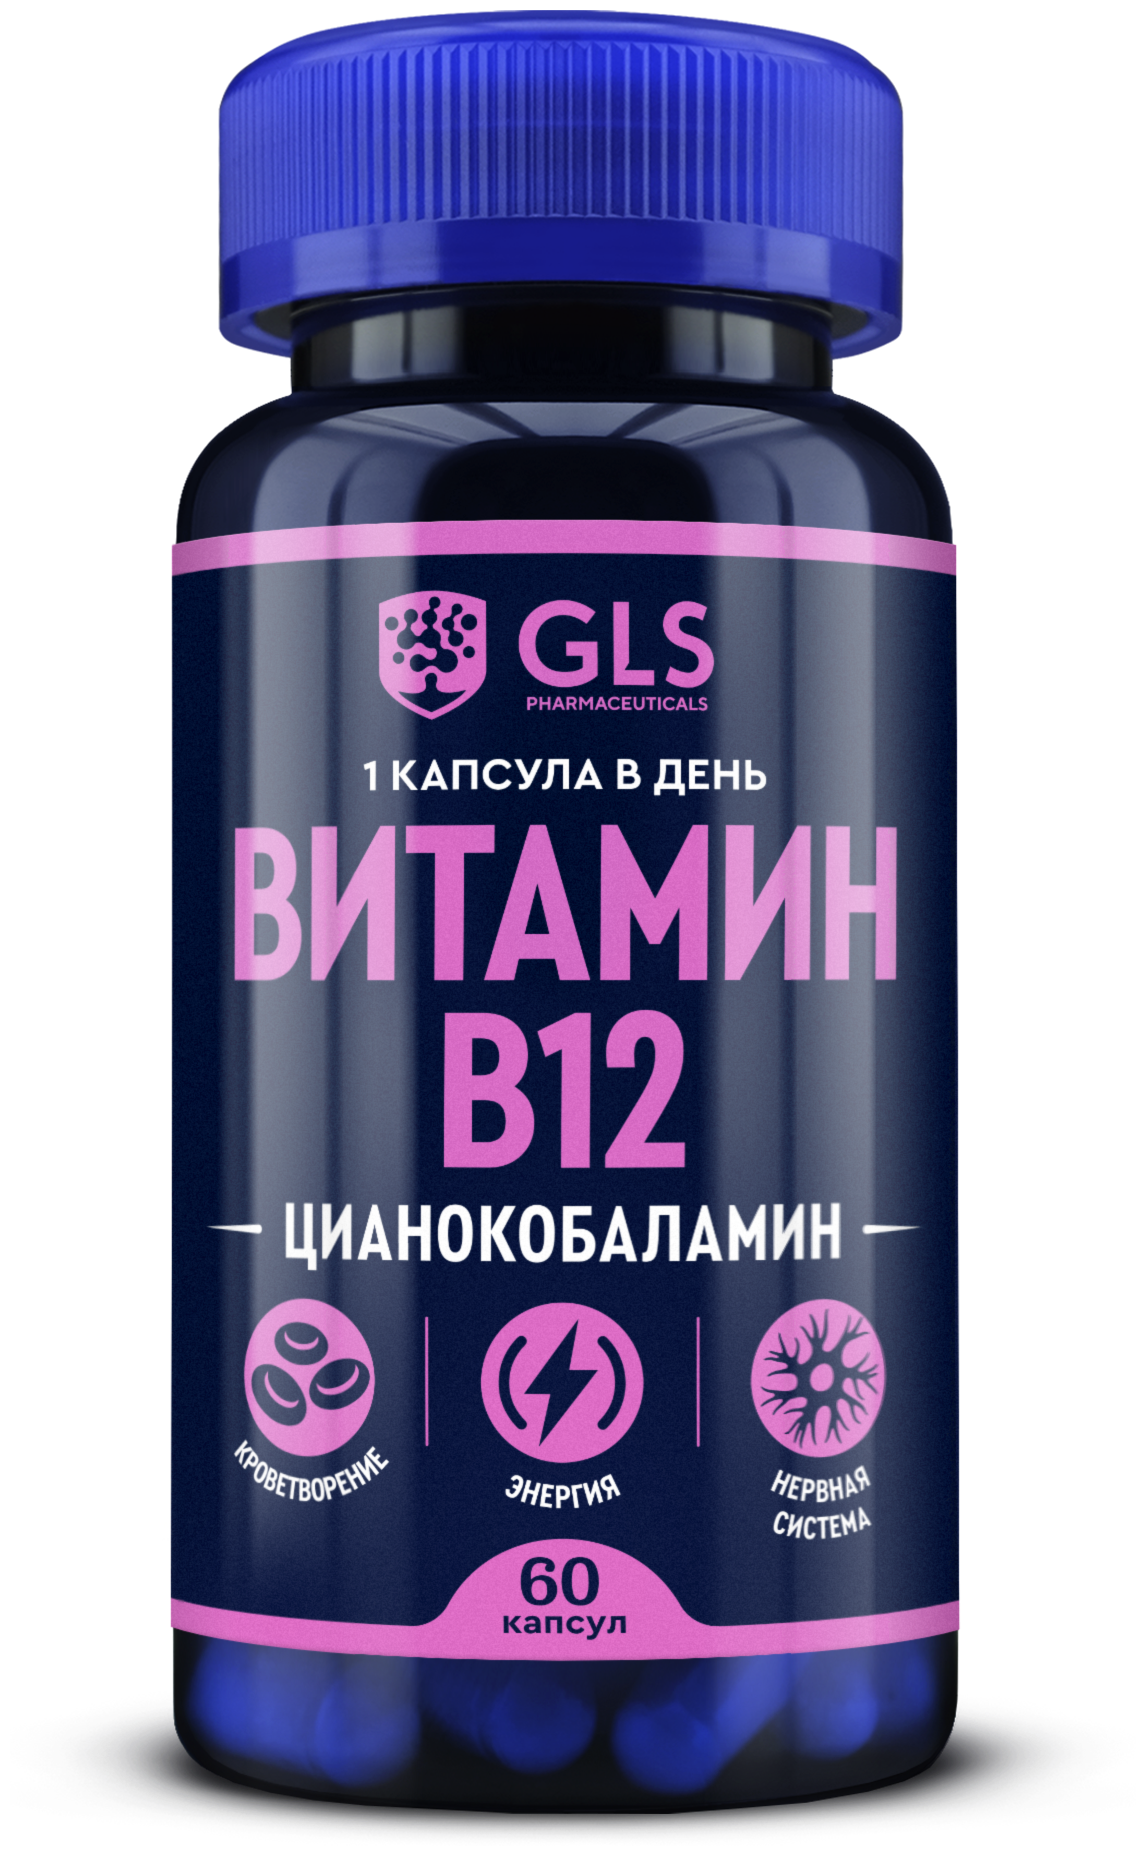 Витамин В12 / Б12 / B12 / бады и витамины для энергии и нервной системы 60 капсул